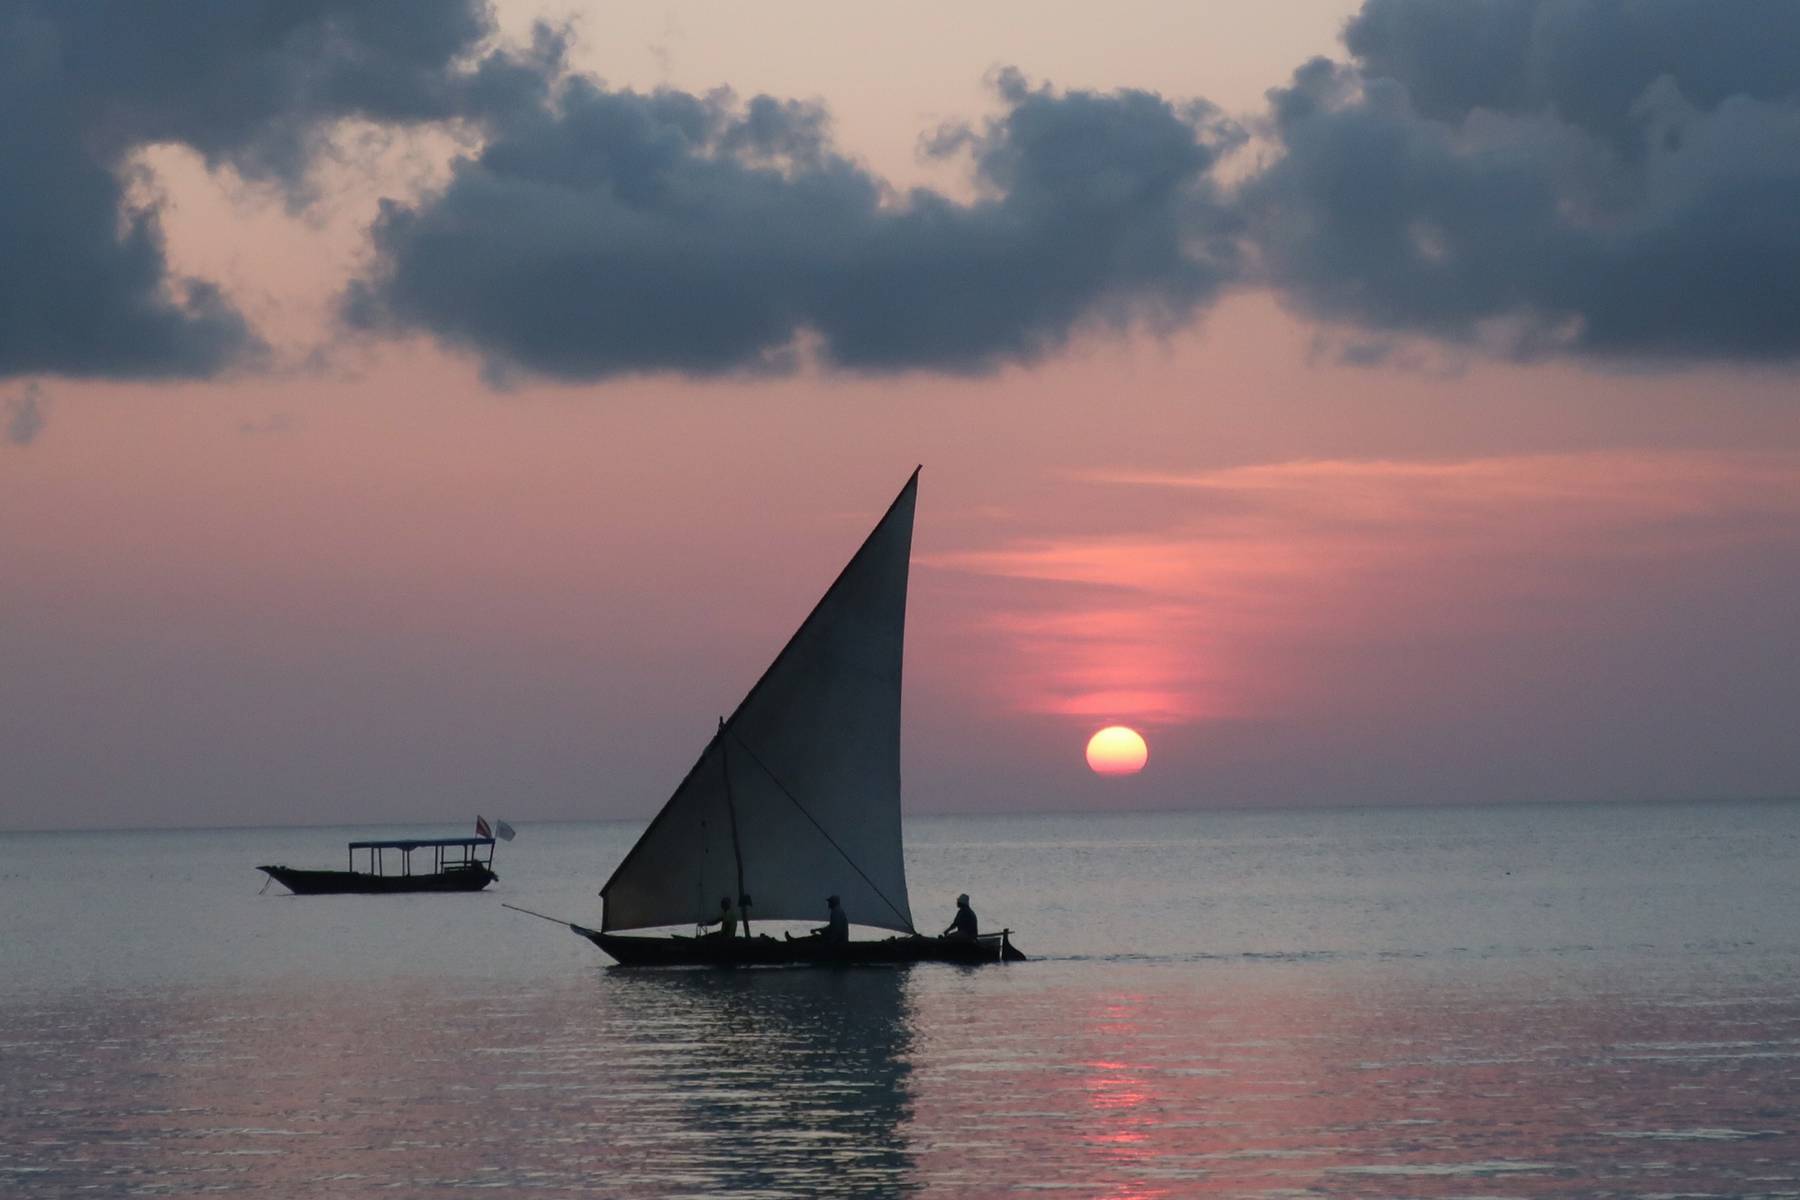 Du seglar med Dhow till Zanzibar